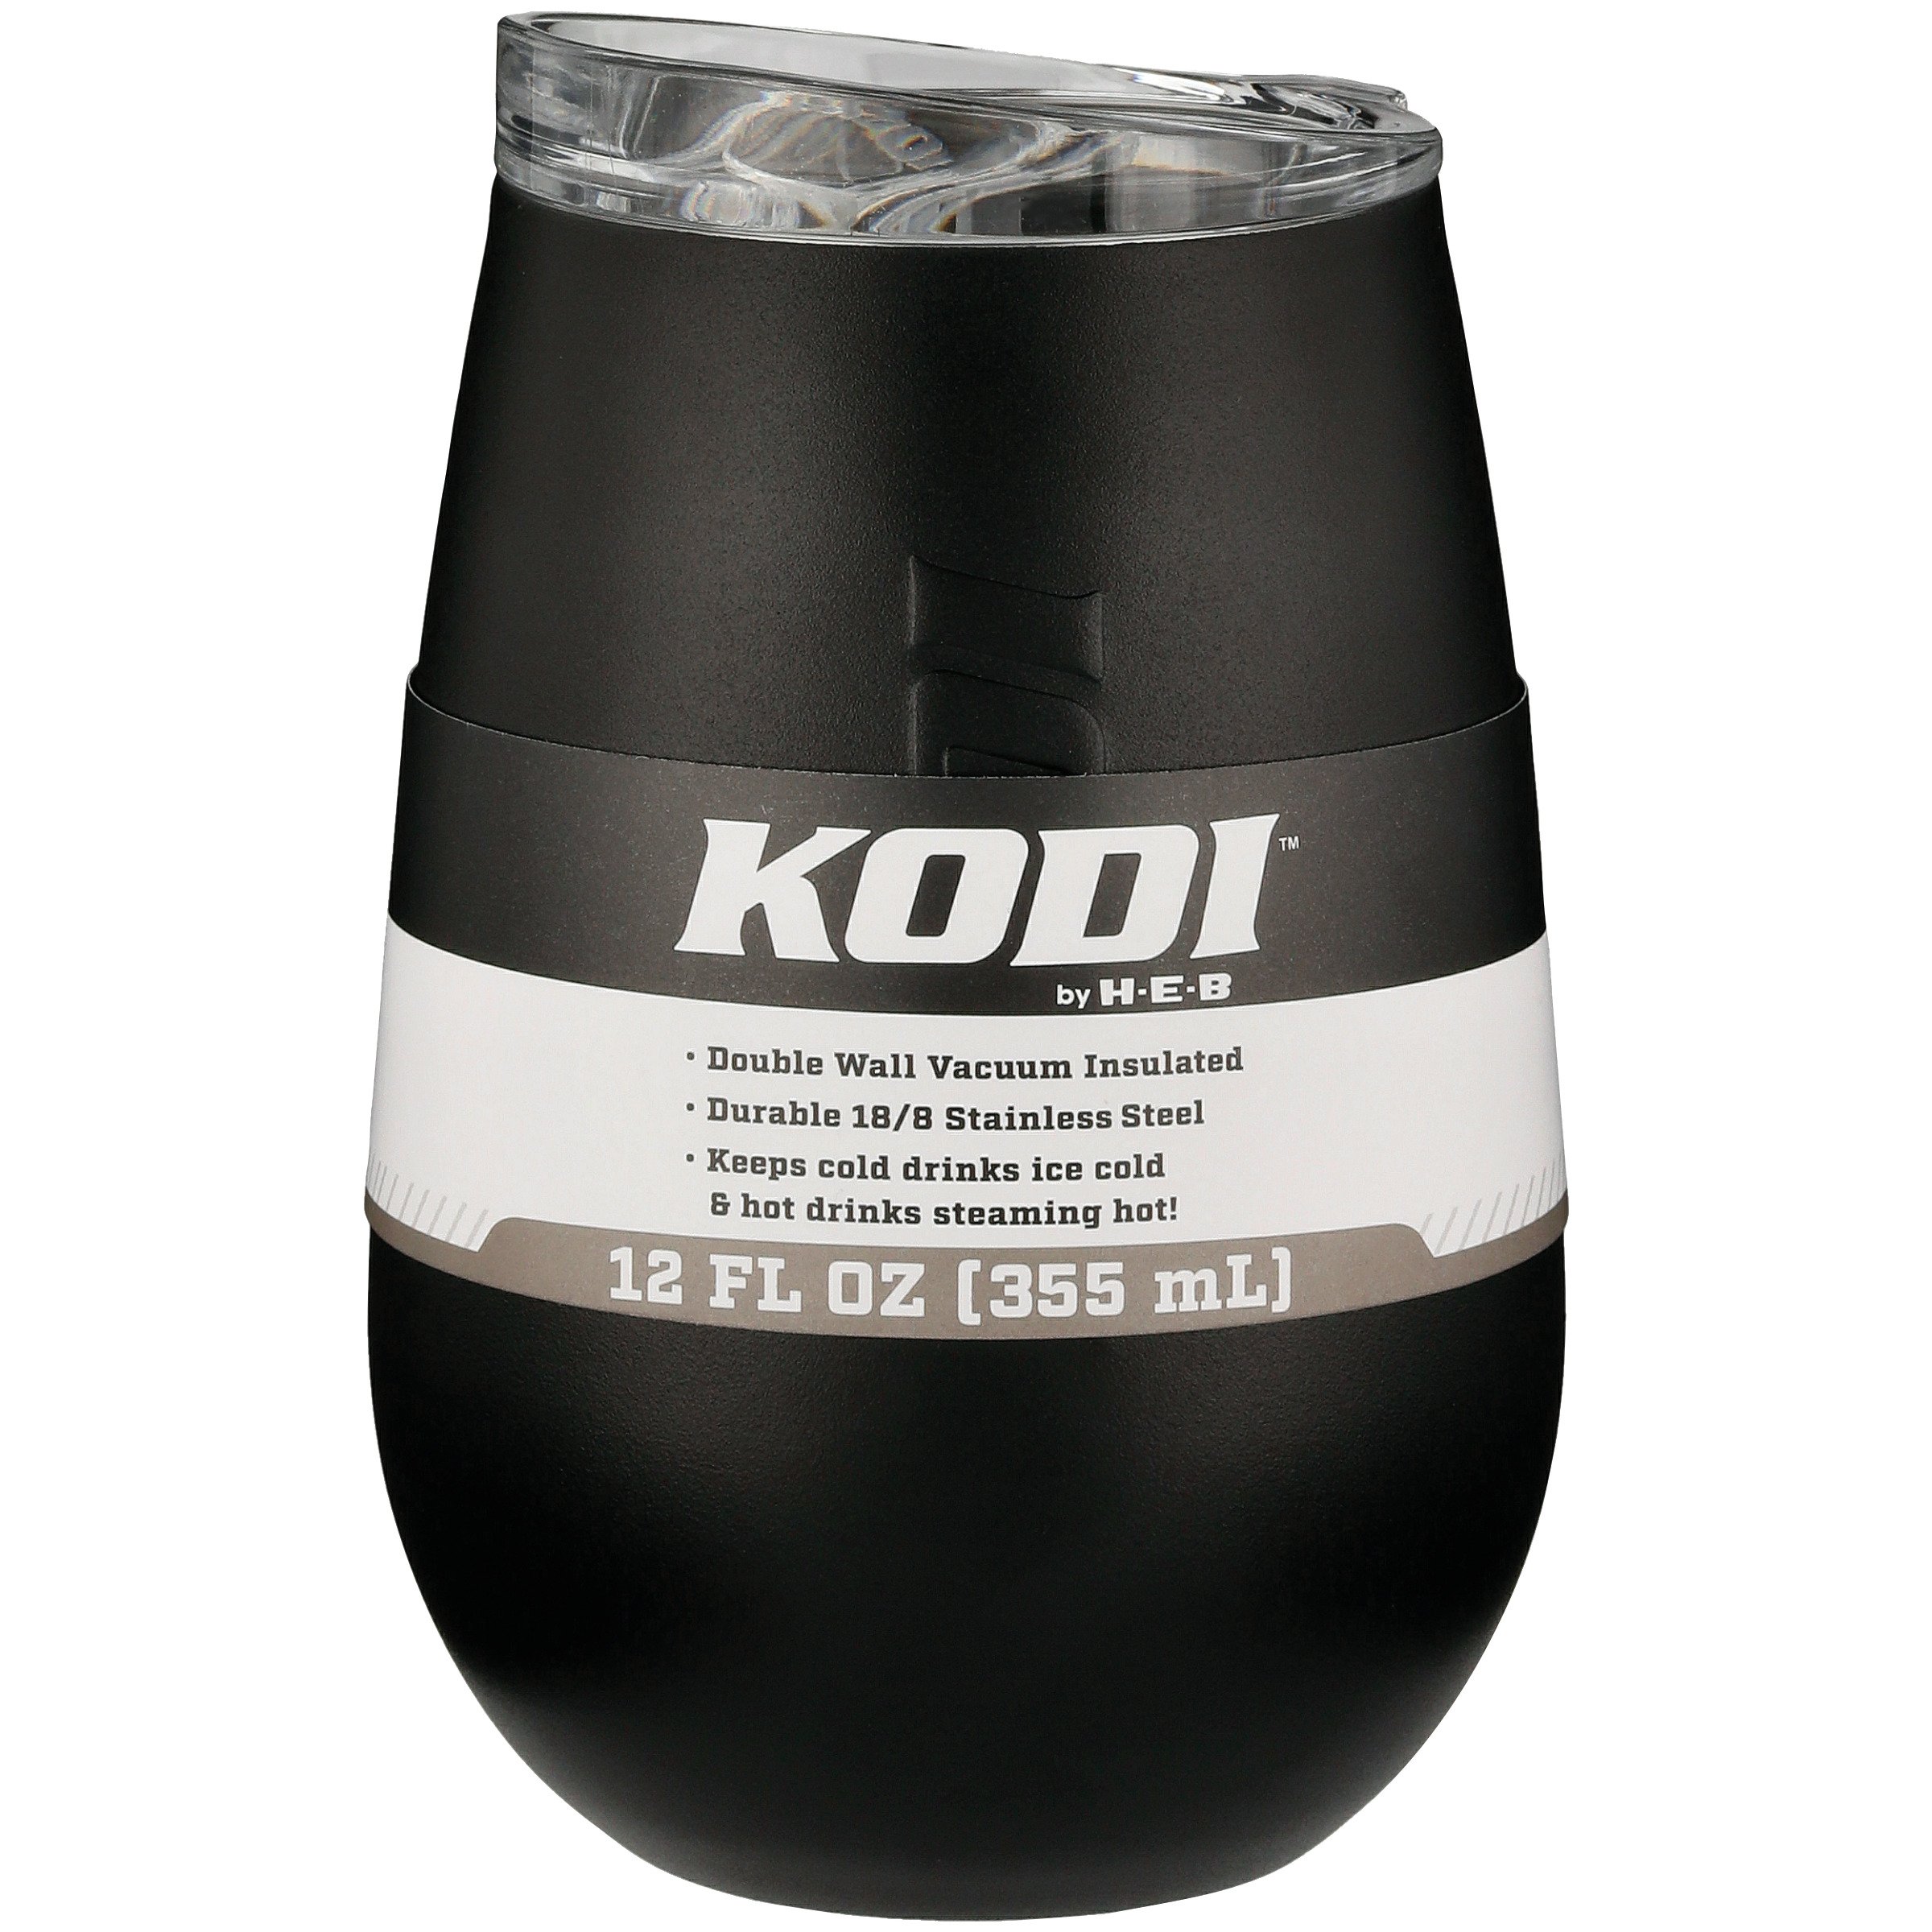 KODI by H-E-B Stainless Steel Water Bottle - Matte Black - Shop